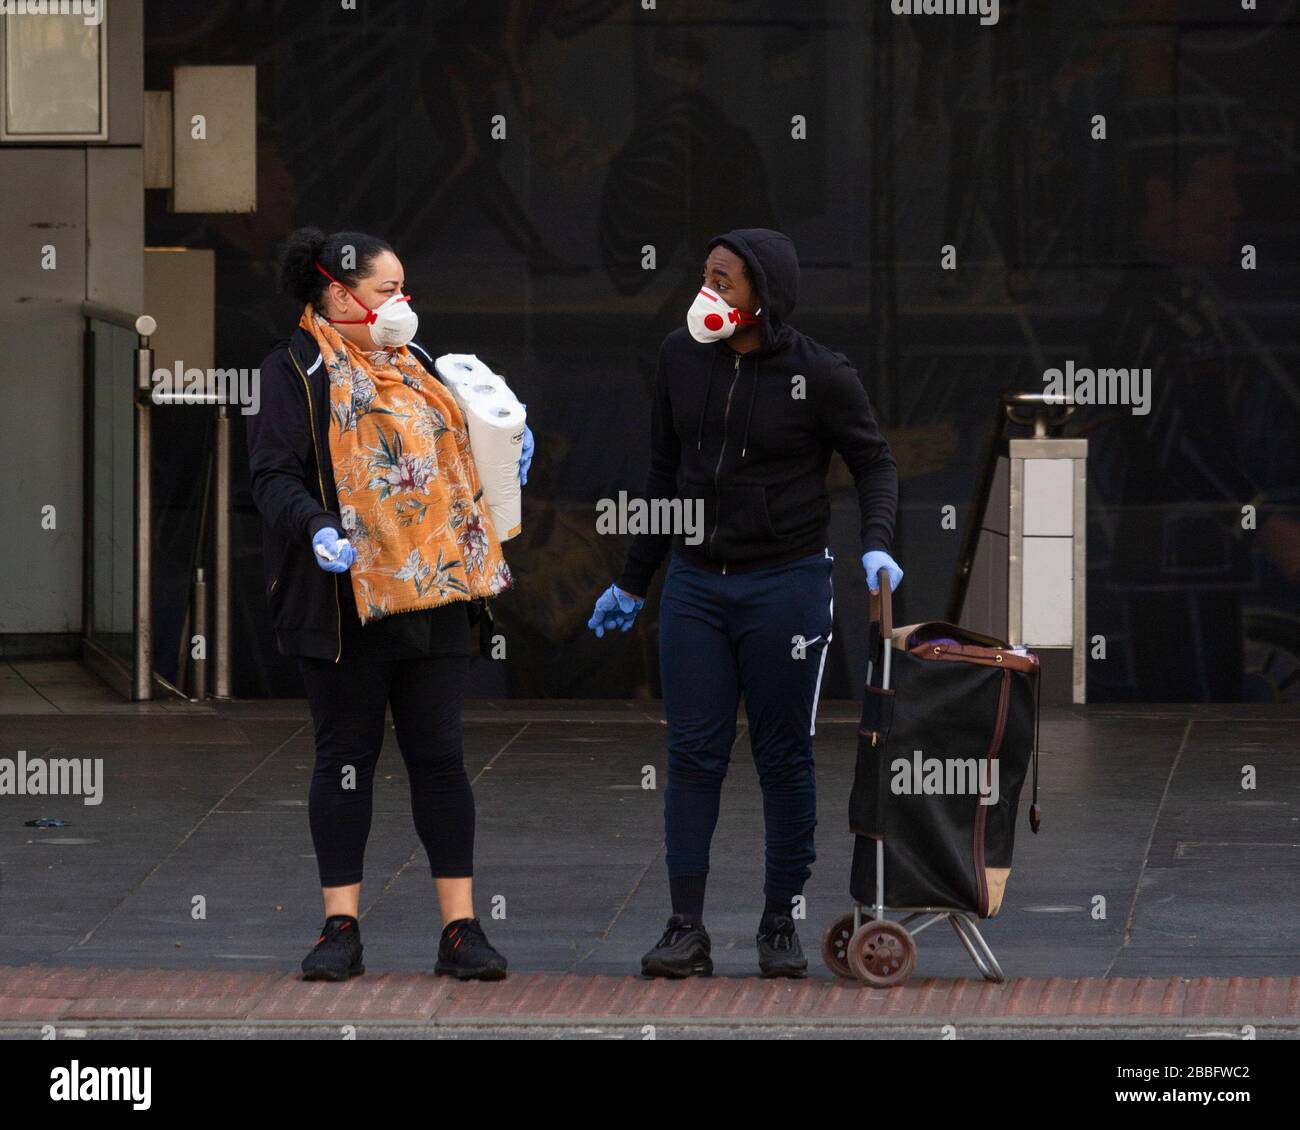 Ein Mann und eine Frau, die vor der Brixton Station stehende Gesichtsmasken und Handschuhe tragen, während der Londoner Sperre aufgrund der Ausbreitung von Covid-19. Genommen Stockfoto